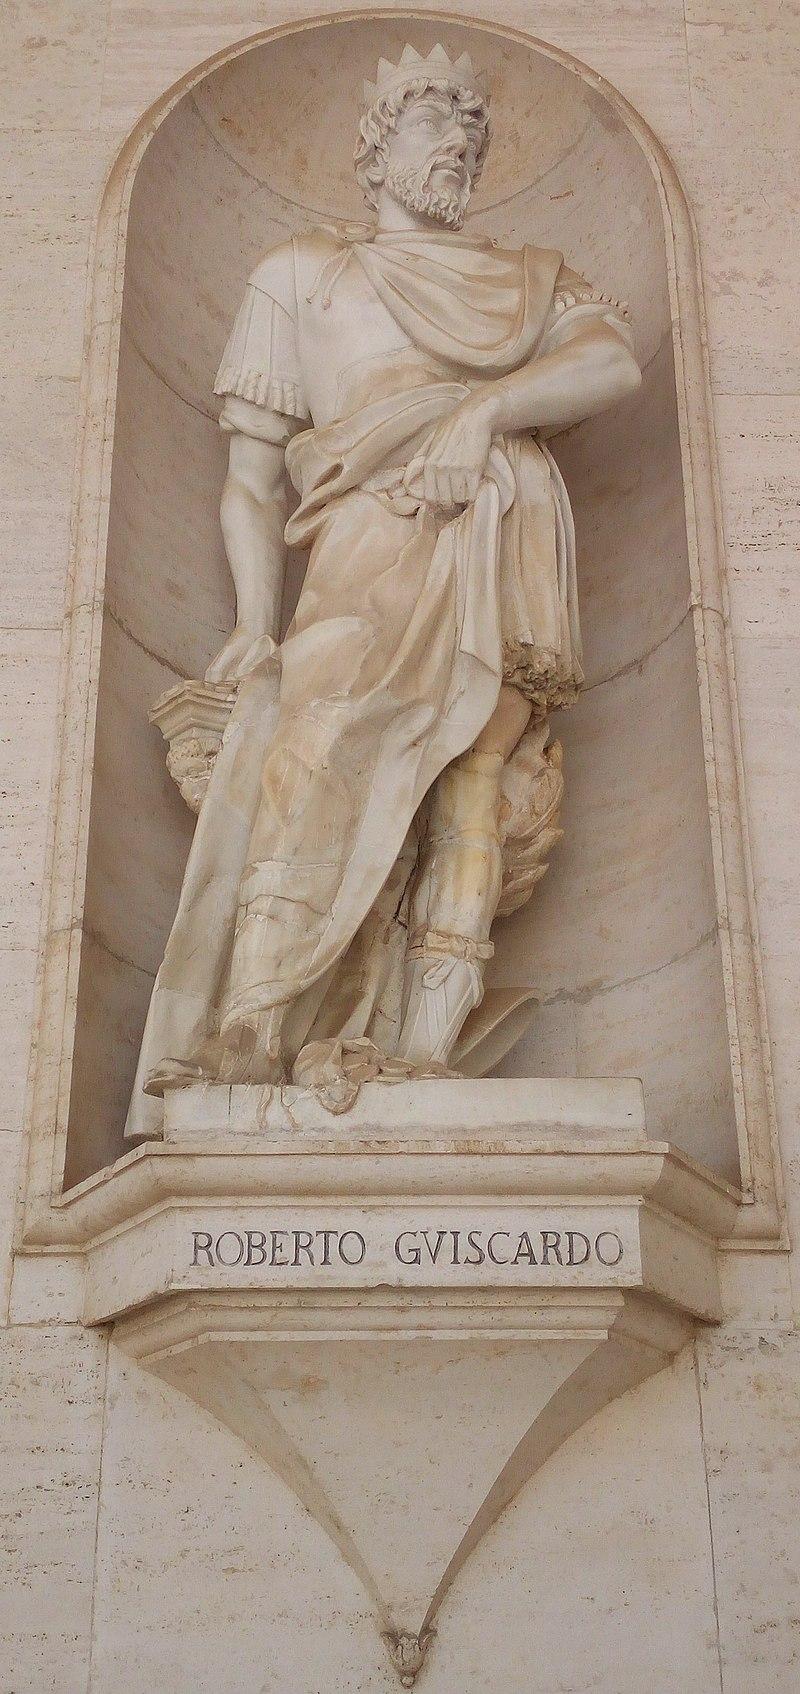 تمثال روبرت جيسكارد